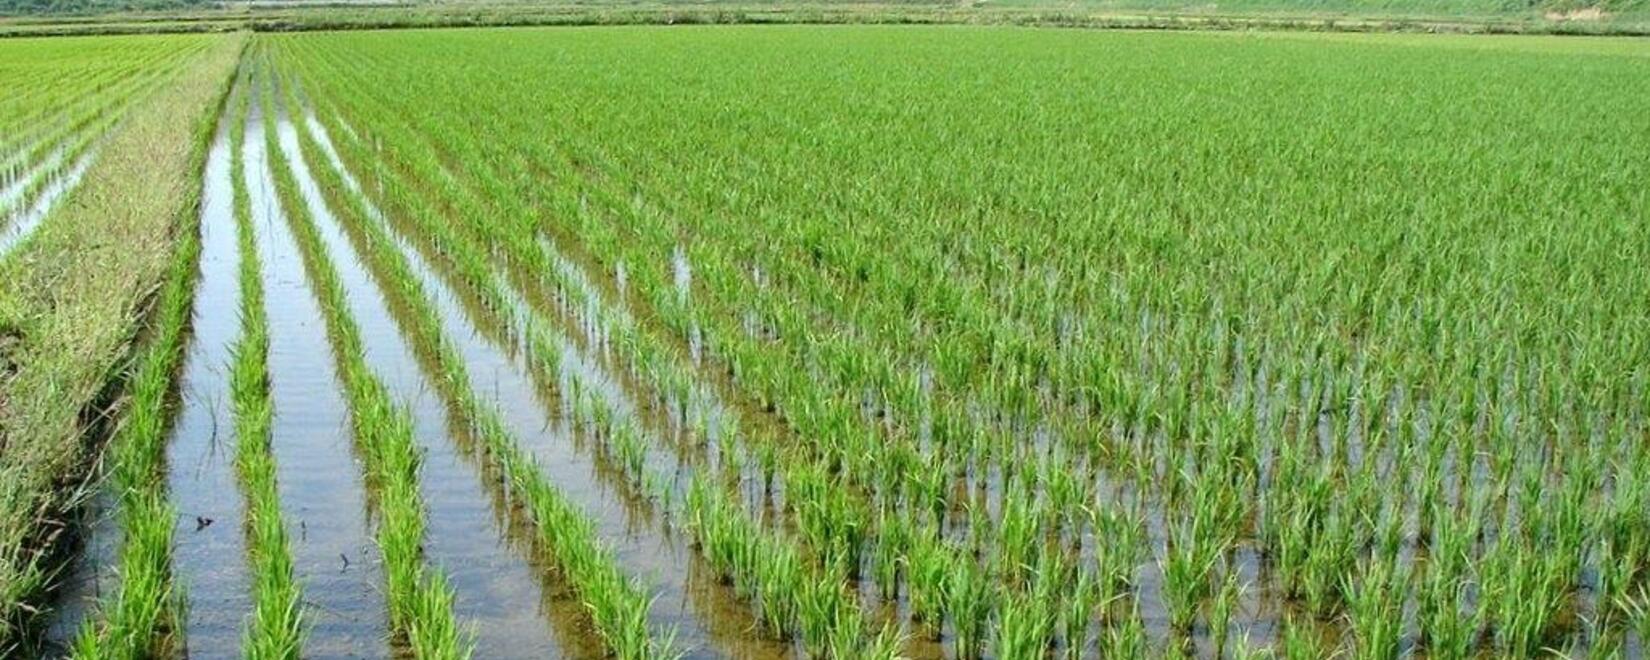 俄罗斯大米生产和出口的发展